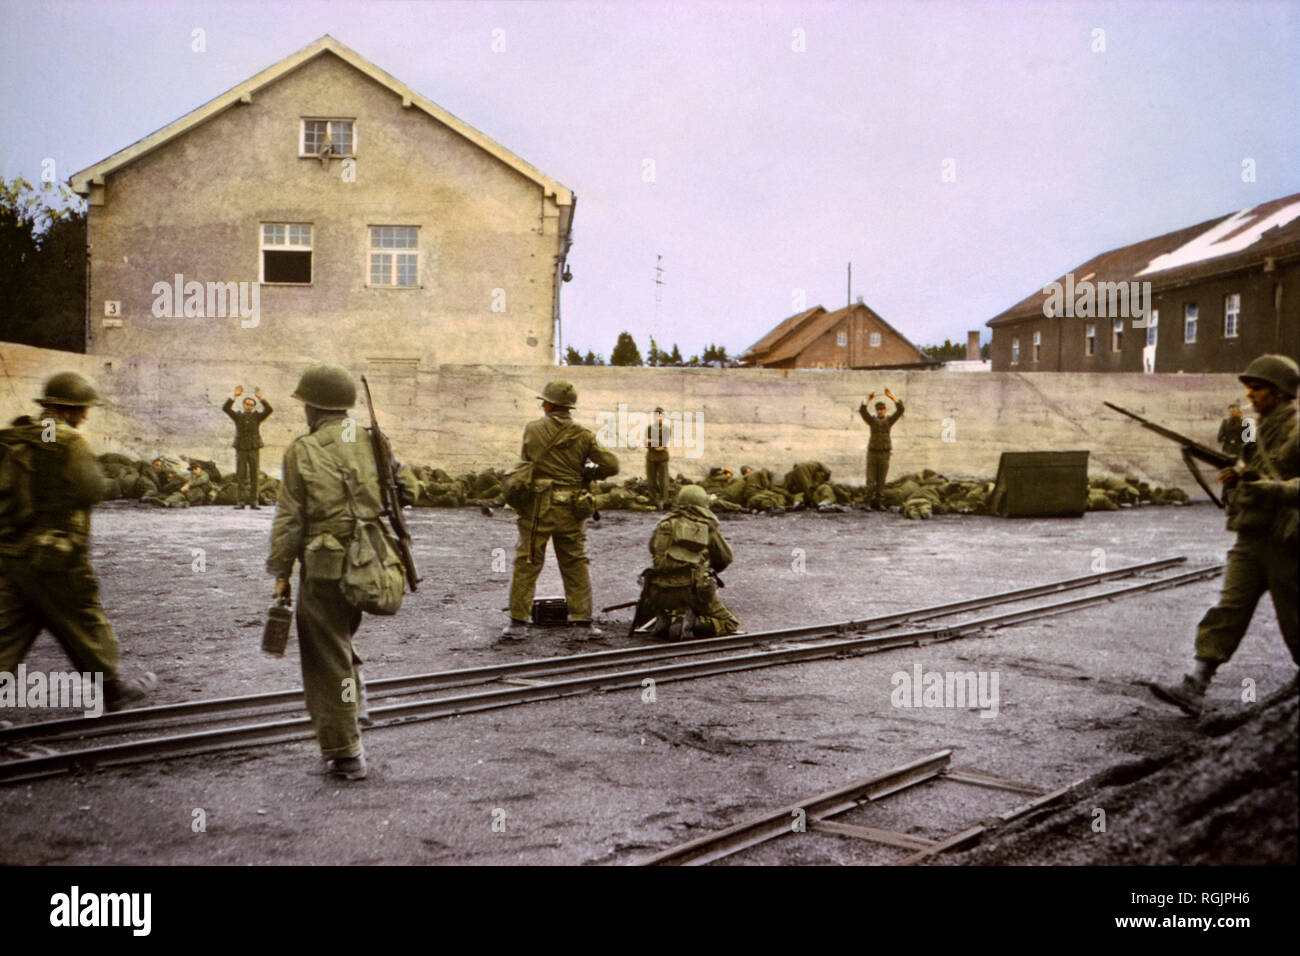 La capture de gardes SS dans le charbon de triage à Camp de concentration par la 42e Division d'infanterie, 7e Armée américaine, Dachau, Allemagne, Europe centrale, de l'Ouest Campagne alliés à l'invasion de l'Allemagne, avril 1945 Banque D'Images